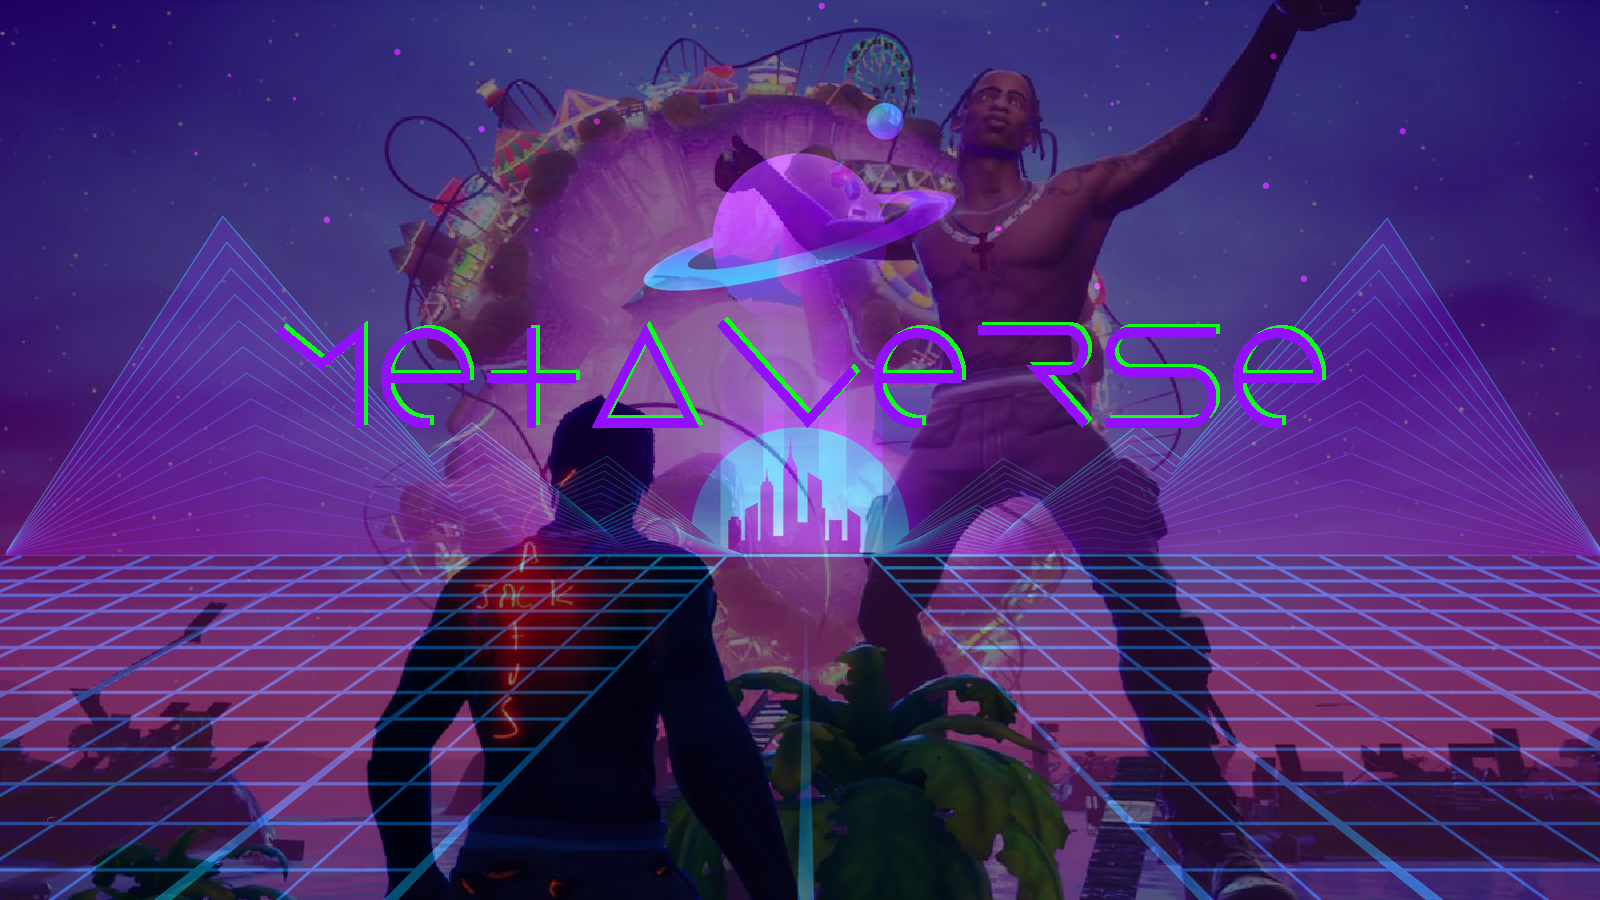 图片展示了一个男性形象站在带有“Metaverse”字样的虚拟现实背景中，周围有太空和科幻元素，彰显未来科技感。